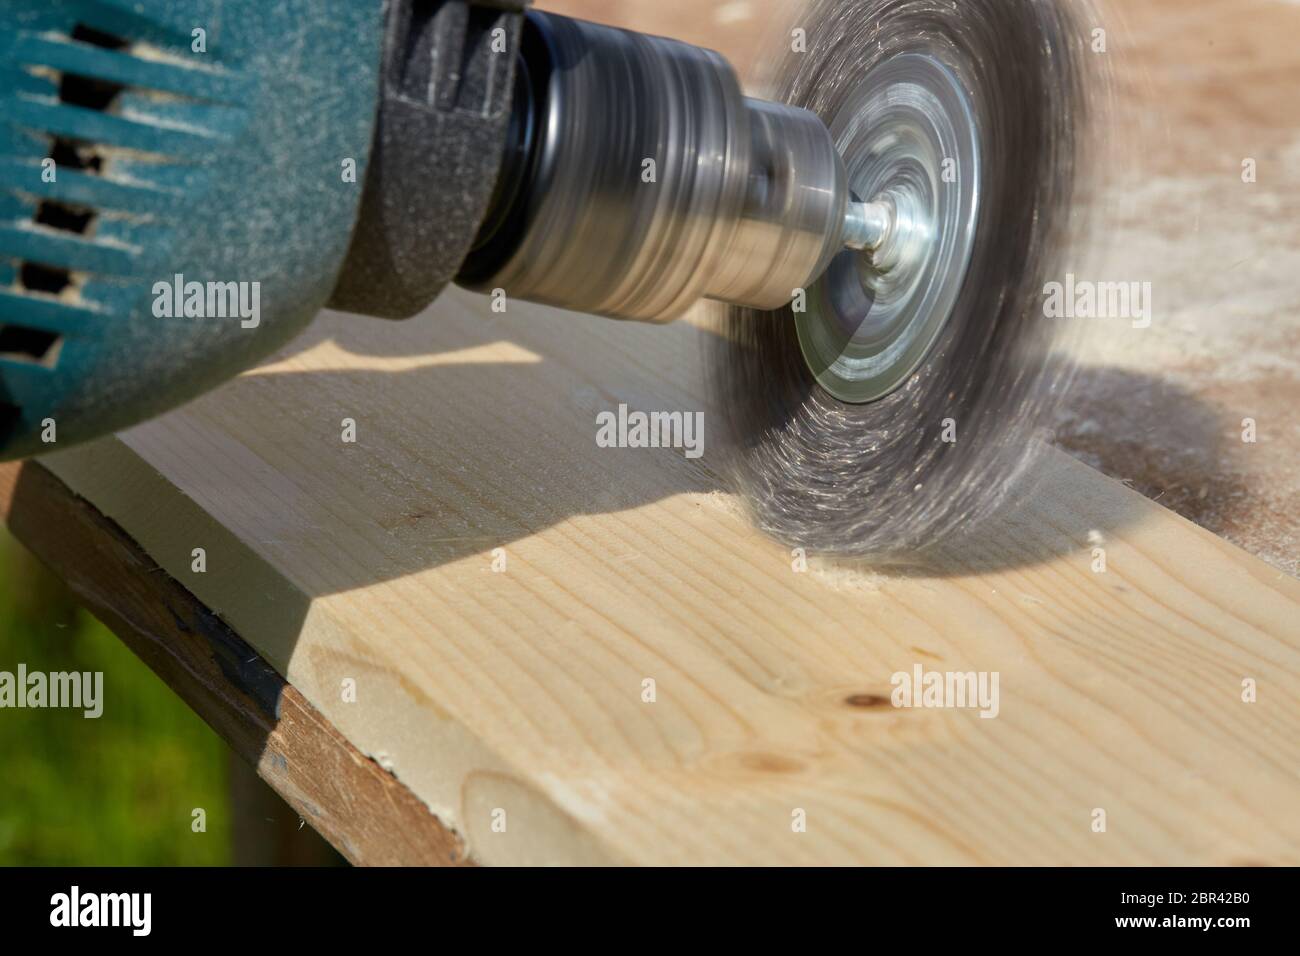 Il processo di spazzolatura di tavola di legno. La mano maschio sta tenendo la spazzolatrice elettrica che ruota con il disco metallico della spazzola che leviga un pezzo di legno. Foto Stock